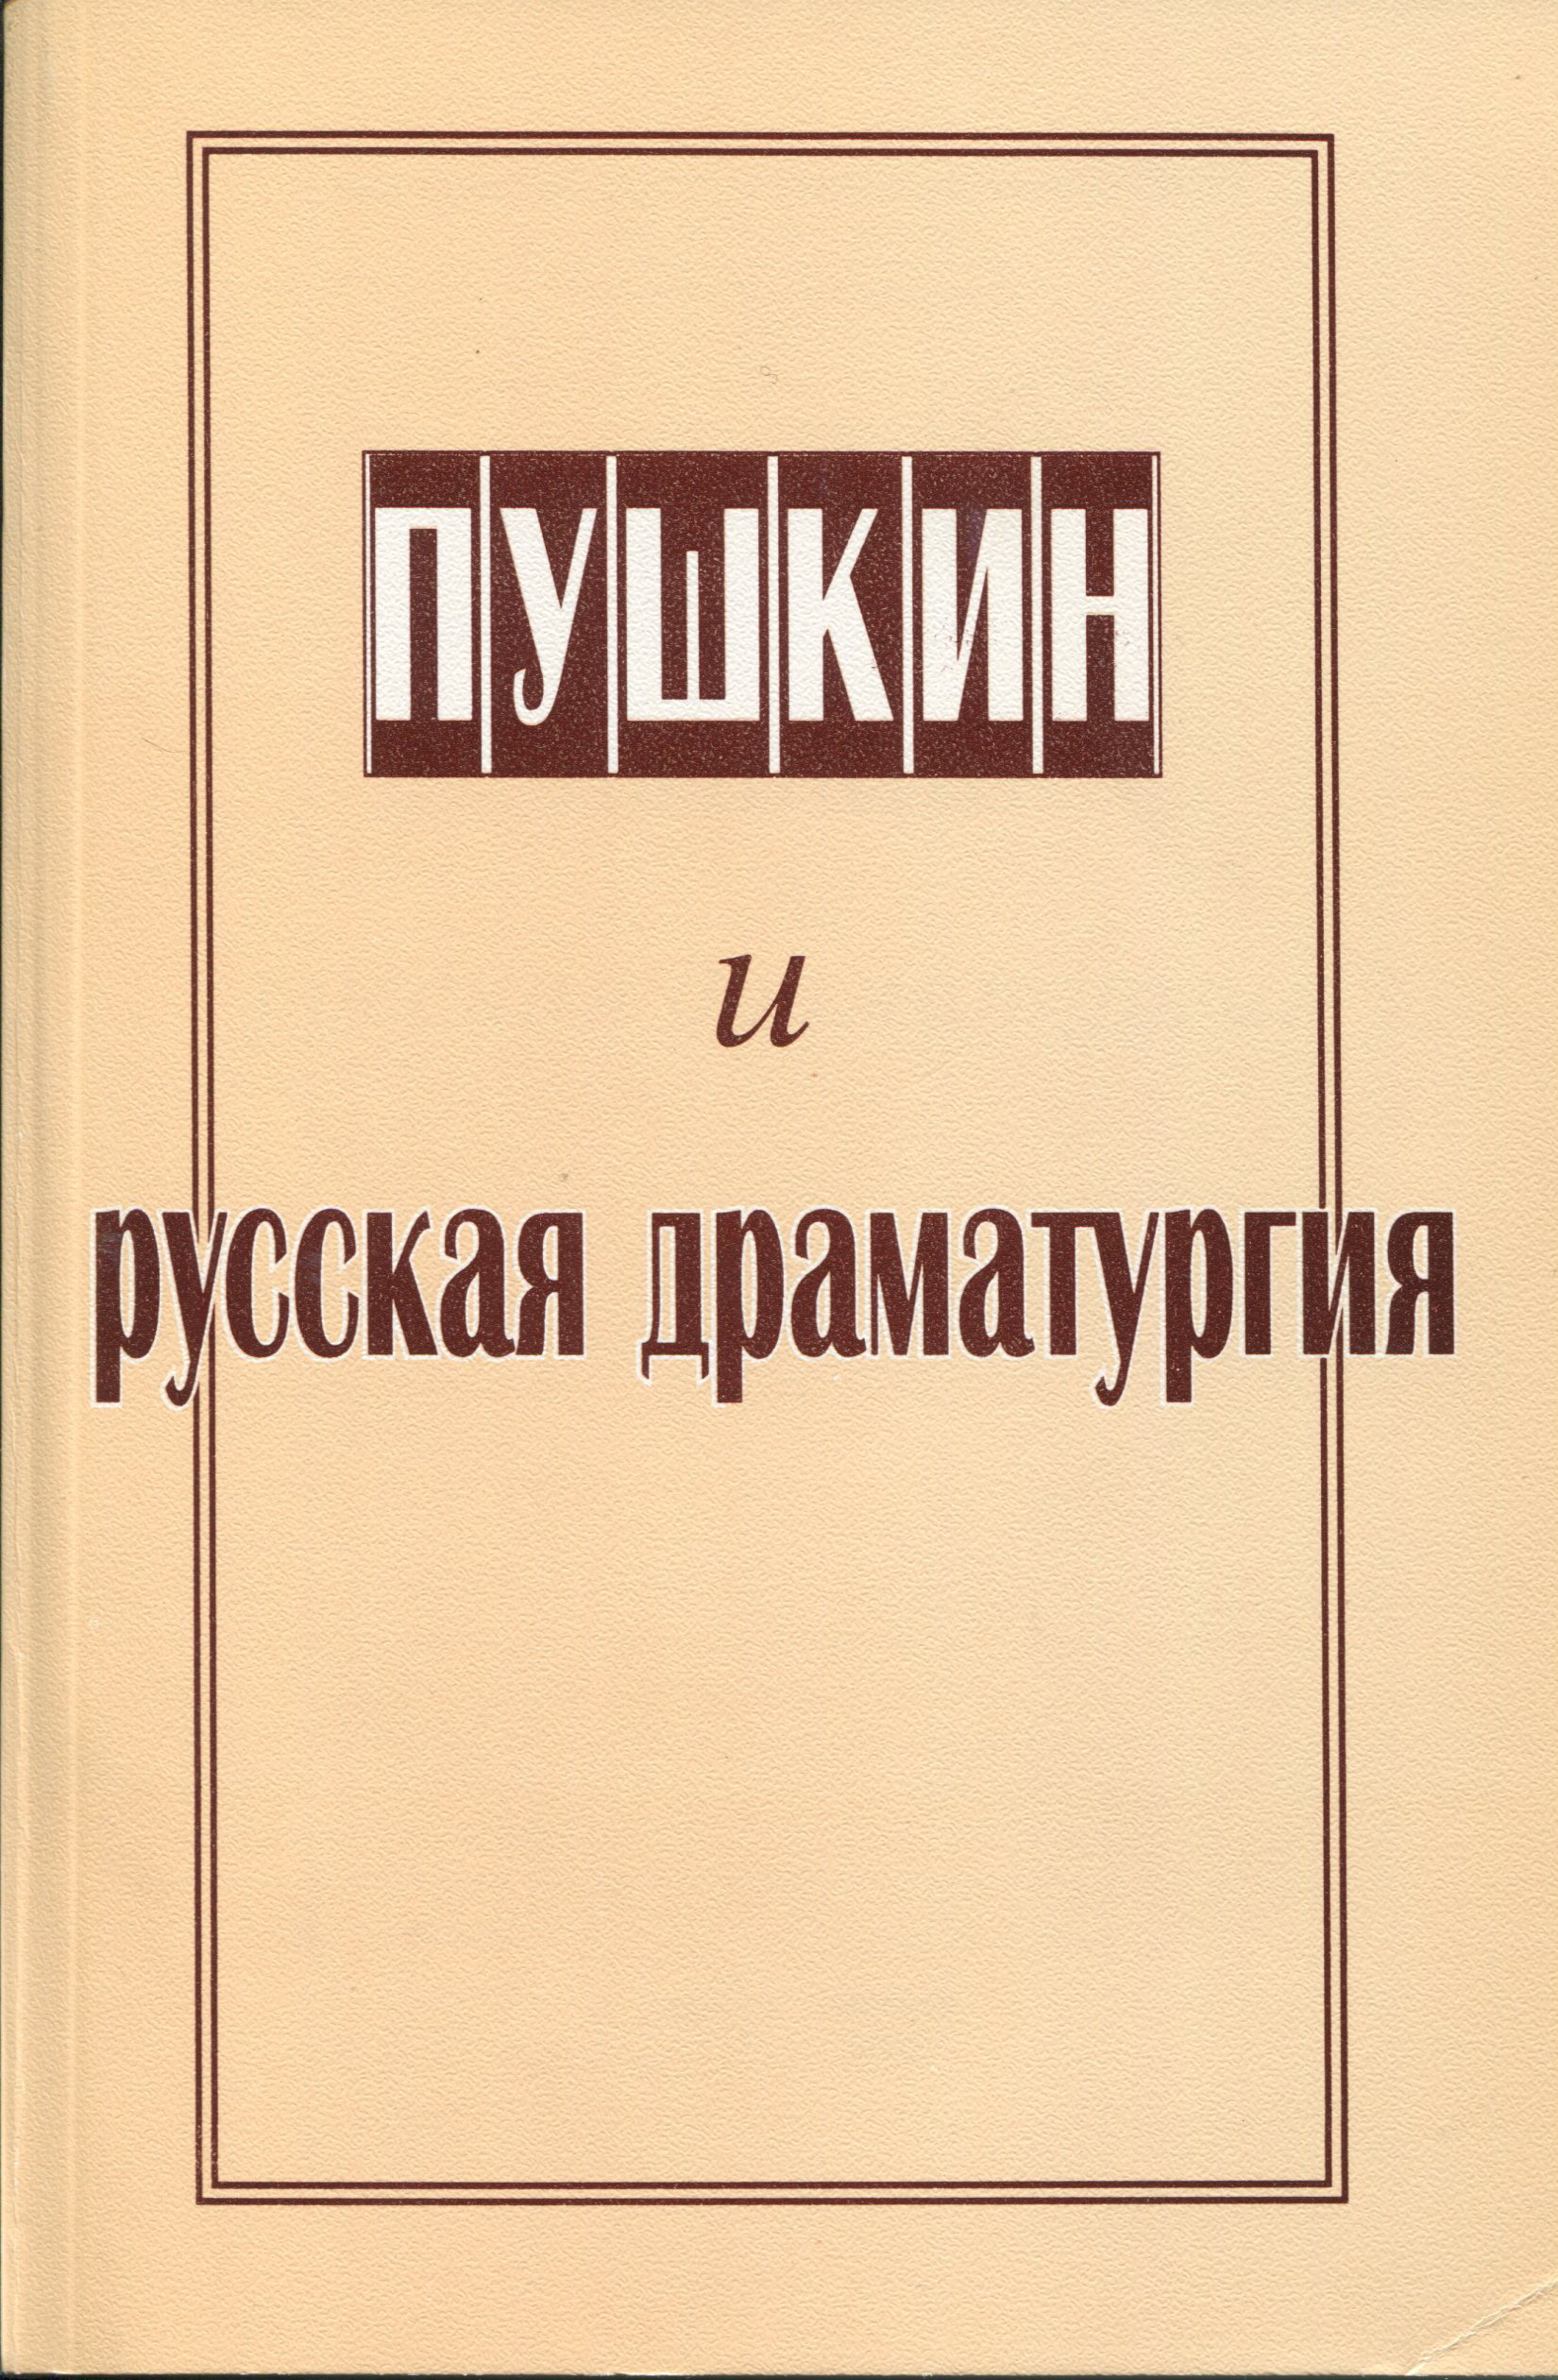 Пушкин и русская драматургия